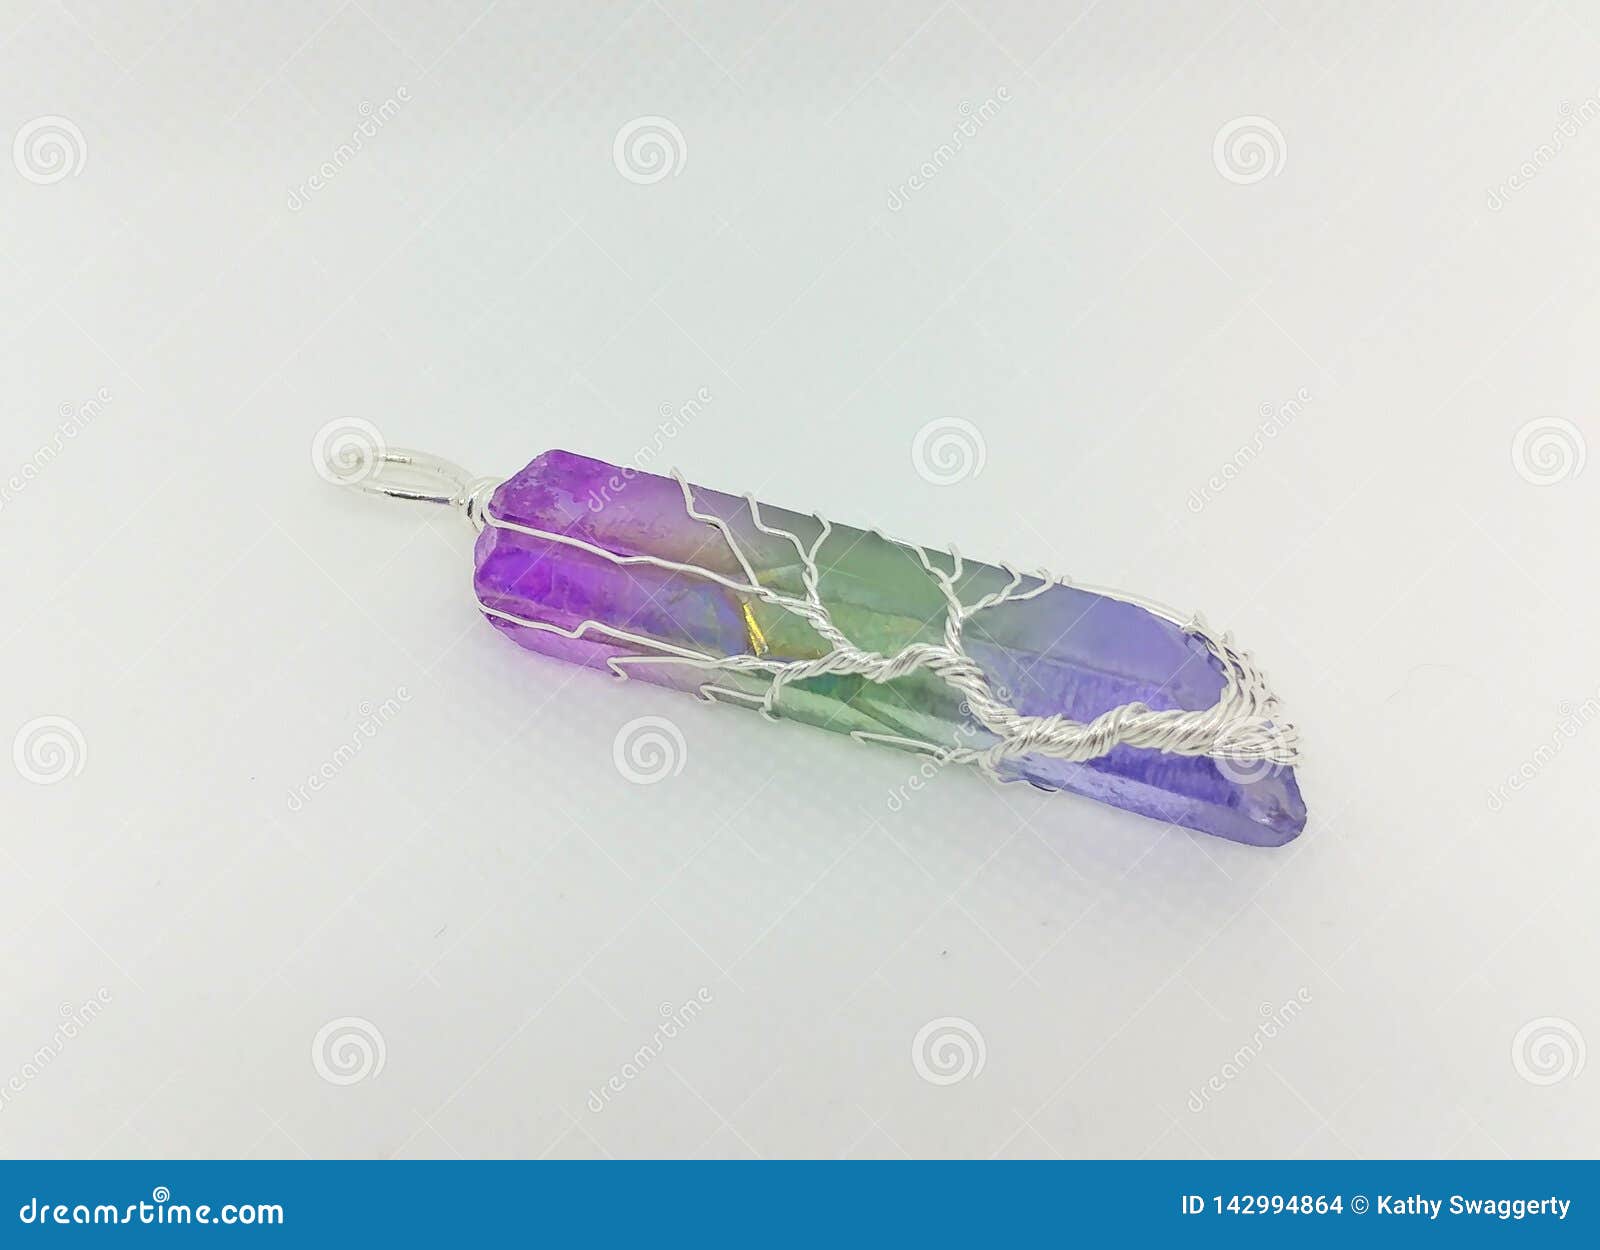 10 Pcs 18x10x5mm Tallado Arco Iris De Titanio Cristal Hoja Colgante Perla CG1539 